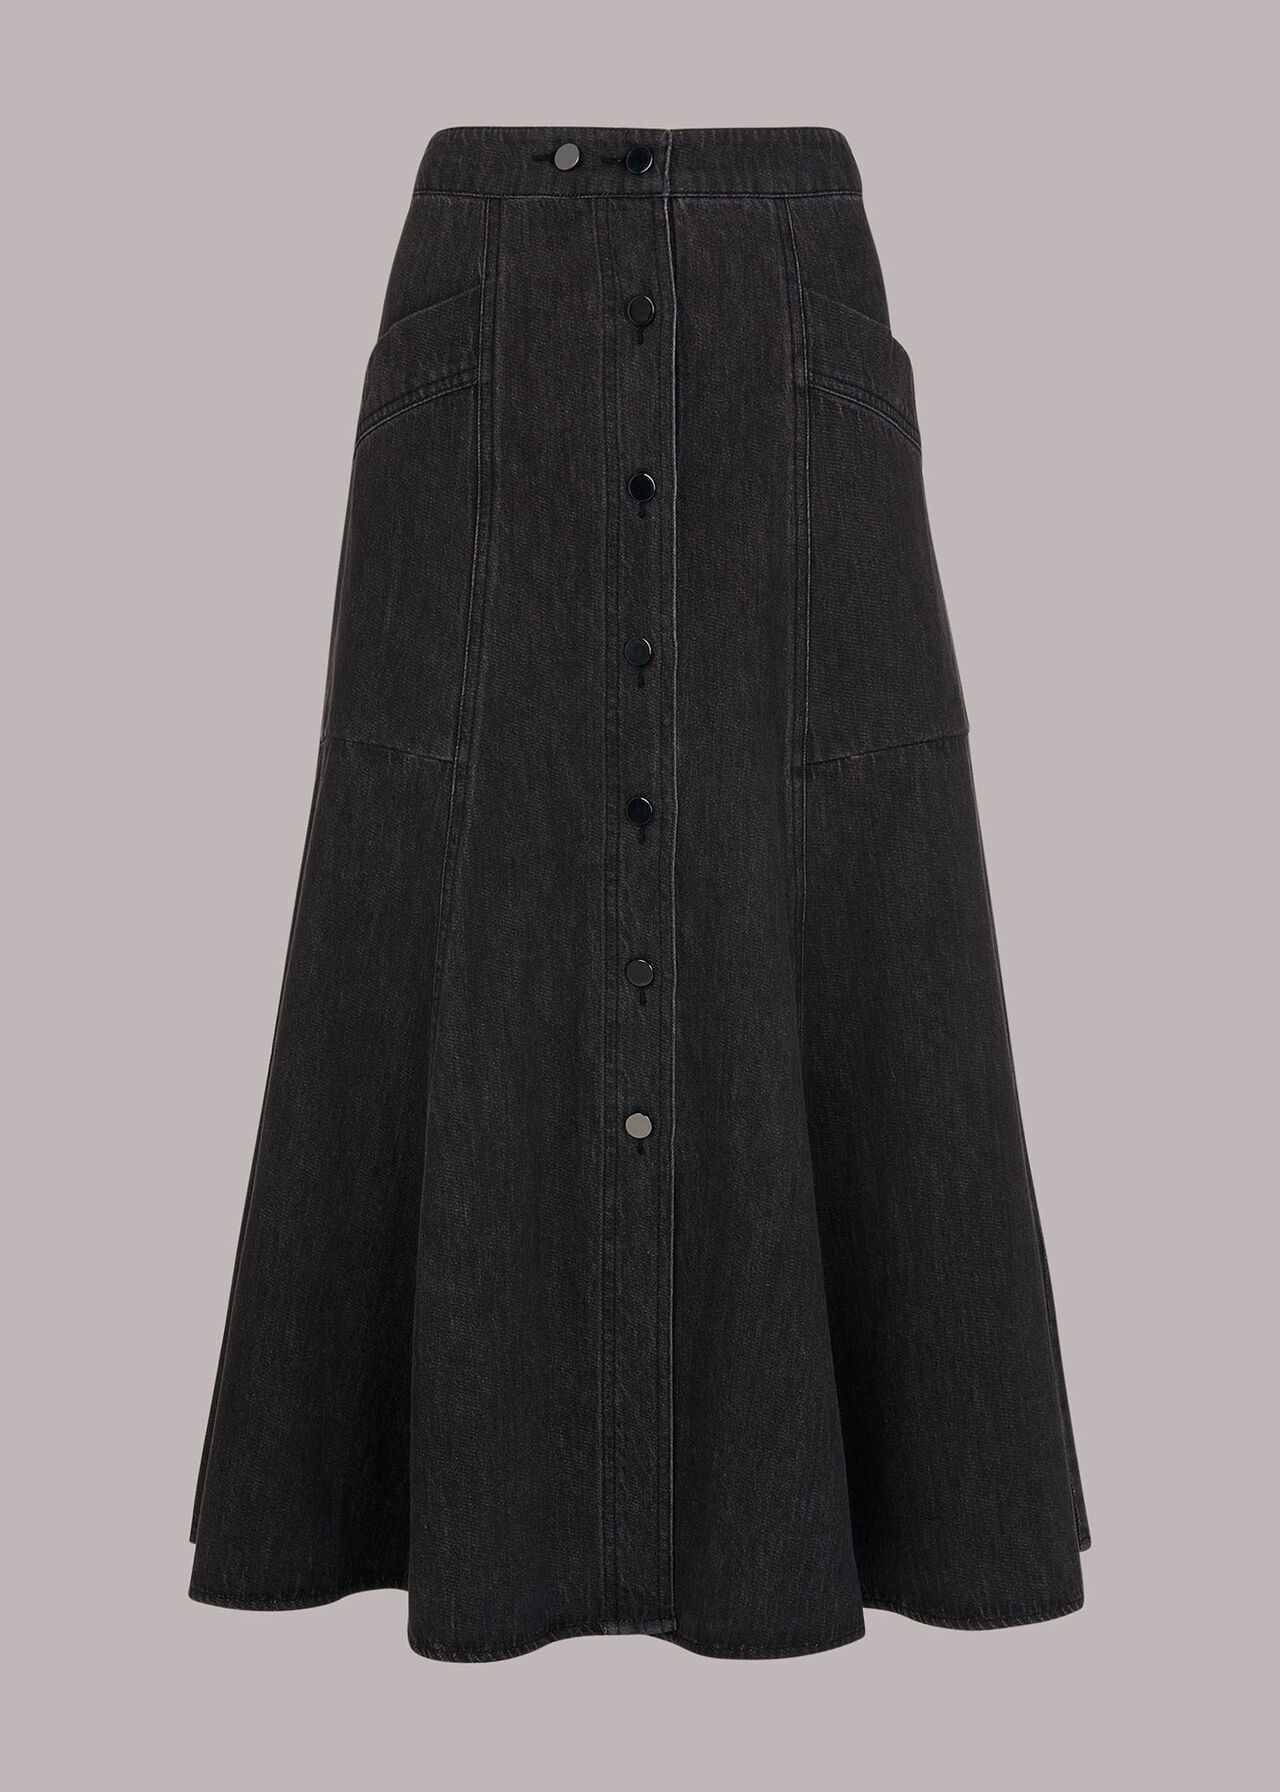 Black Julia Flare Denim Skirt | WHISTLES | Whistles US